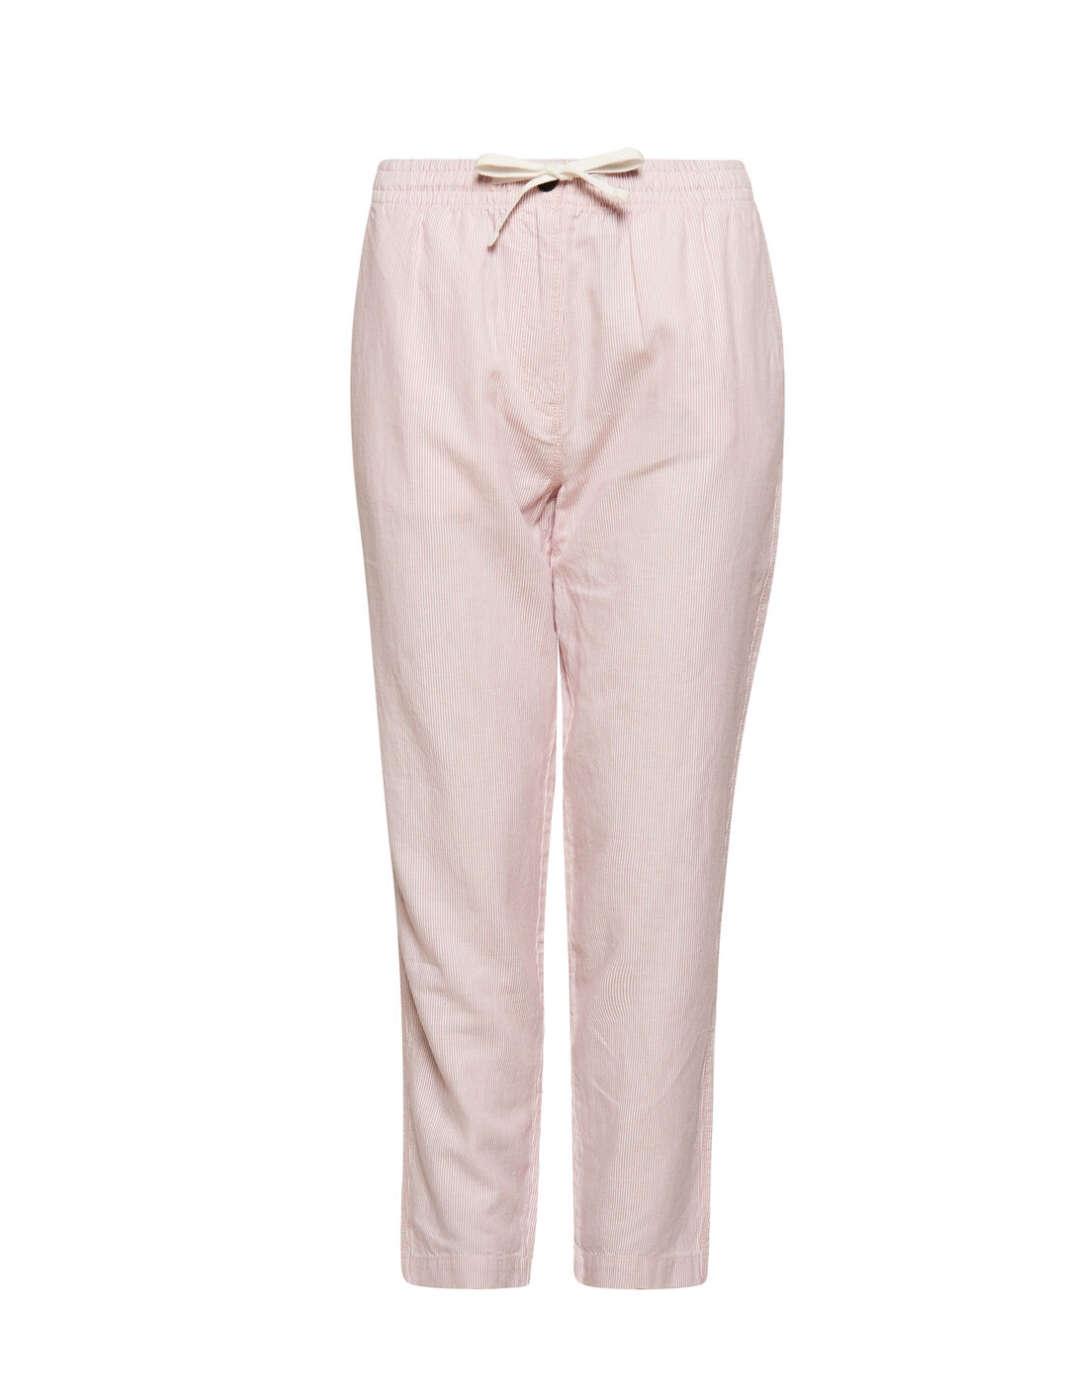 Pantalon Superdry Jogger rosa para mujer-a